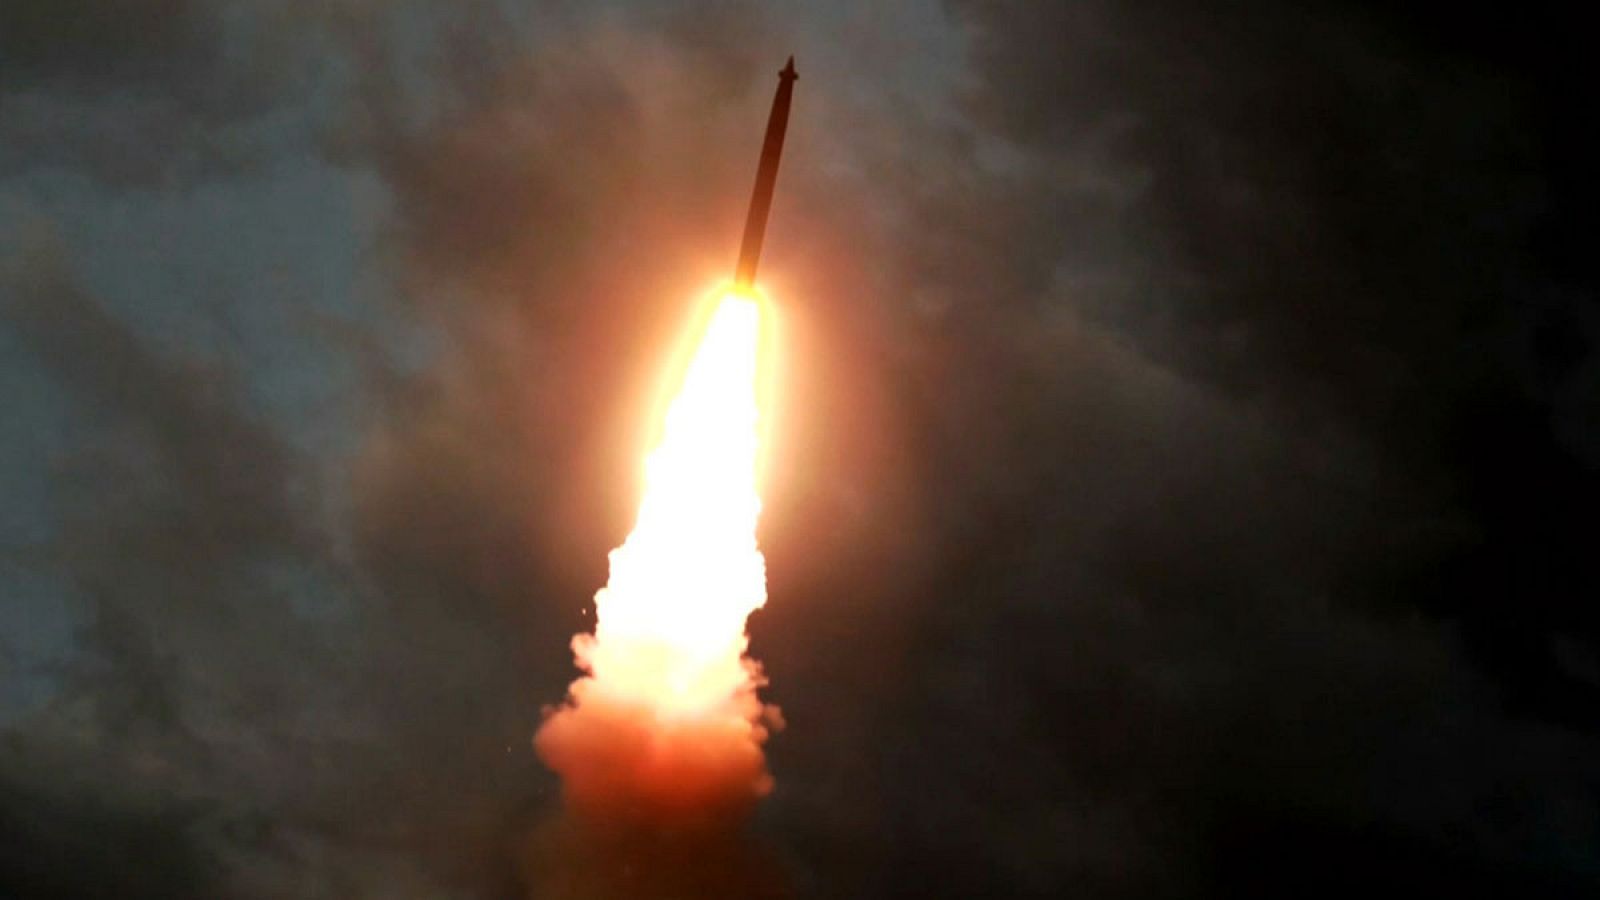 Imagen de uno de los misiles balísticos lanzados en los últimos días por el régimen norcoreano.